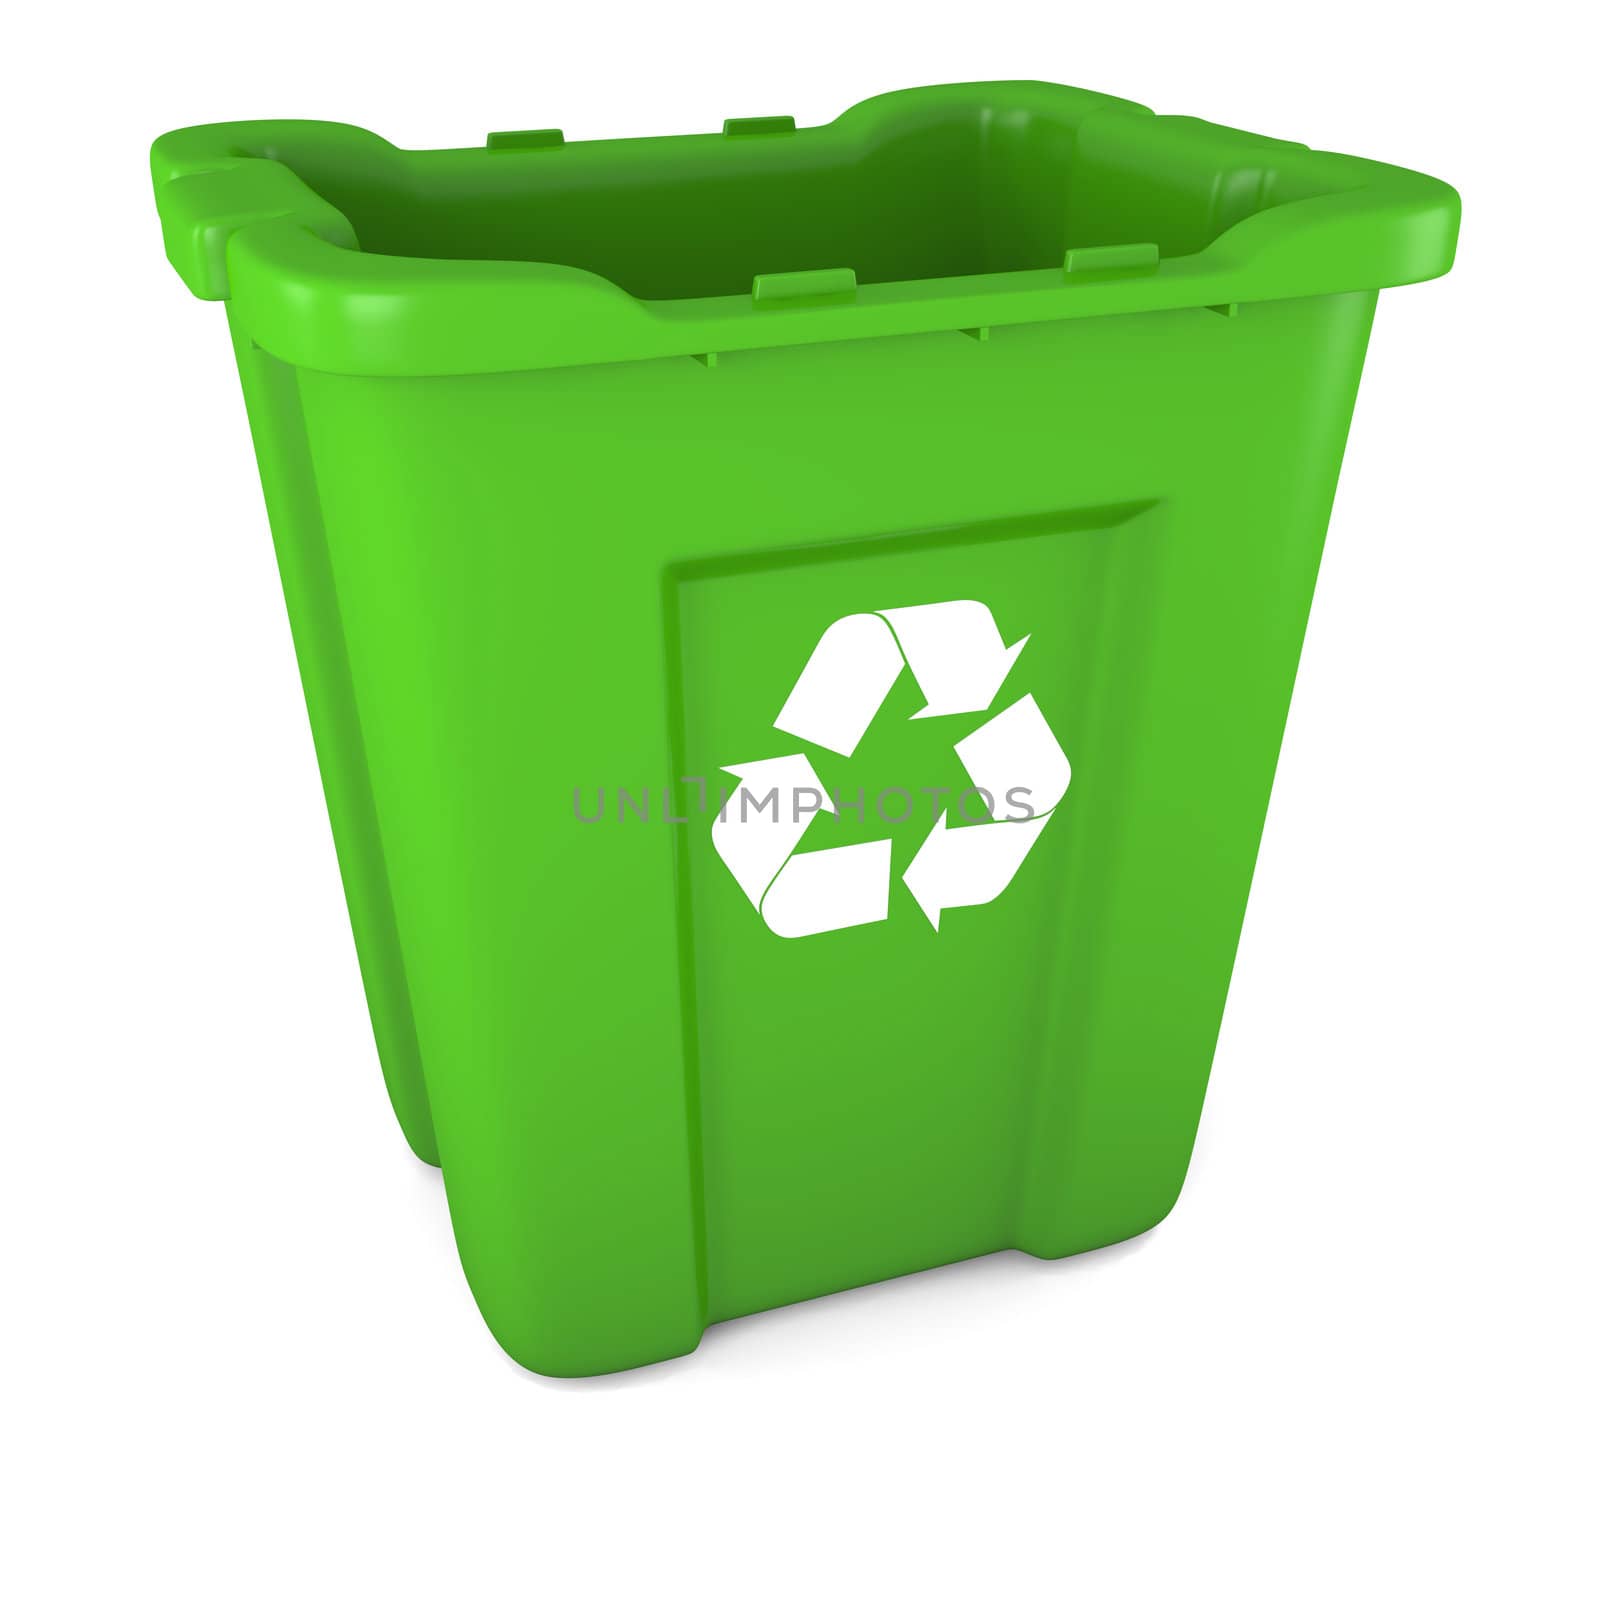 3D model of empty green plastic recycle bin